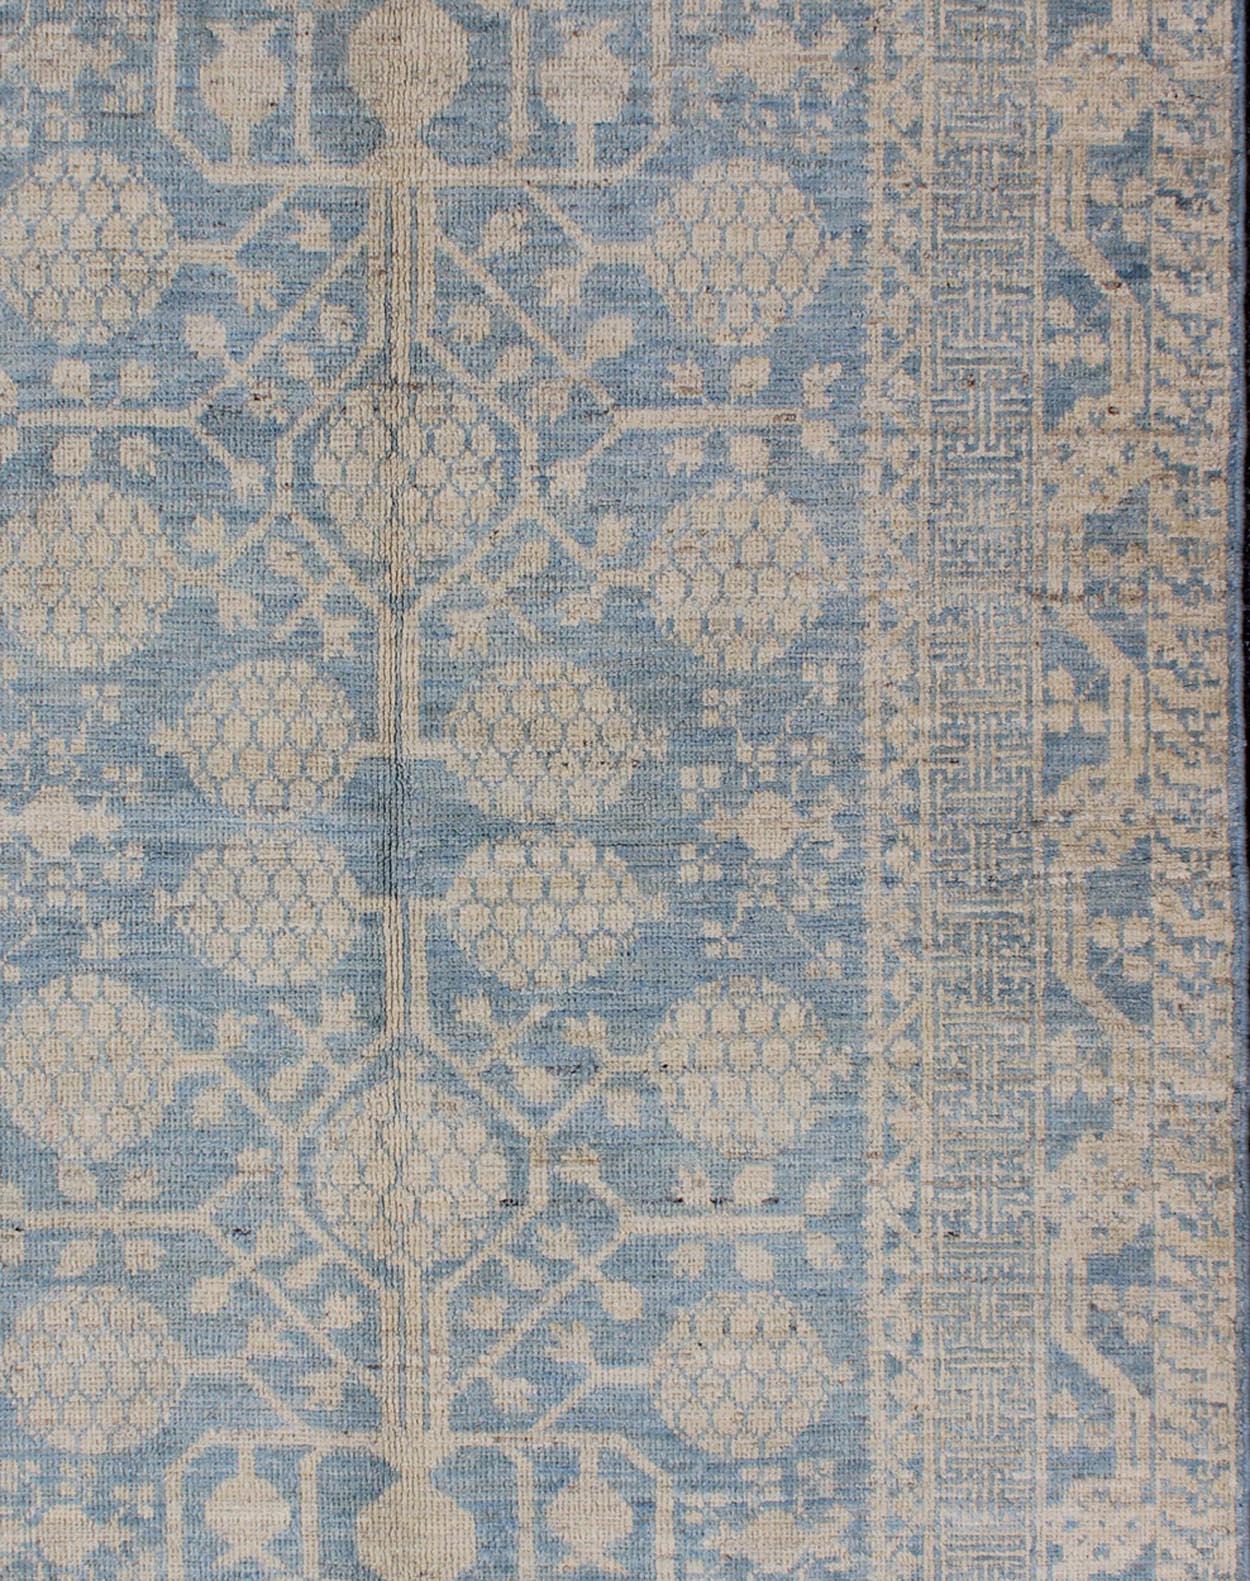 Dieser Khotan zeichnet sich durch ein ganzflächiges Granatapfelmuster aus, das von einem sich wiederholenden Muster in der Bordüre flankiert wird. Das gesamte Stück ist in Hellblau und Cremetönen gehalten, was ihn zu einem vielseitigen Teppich